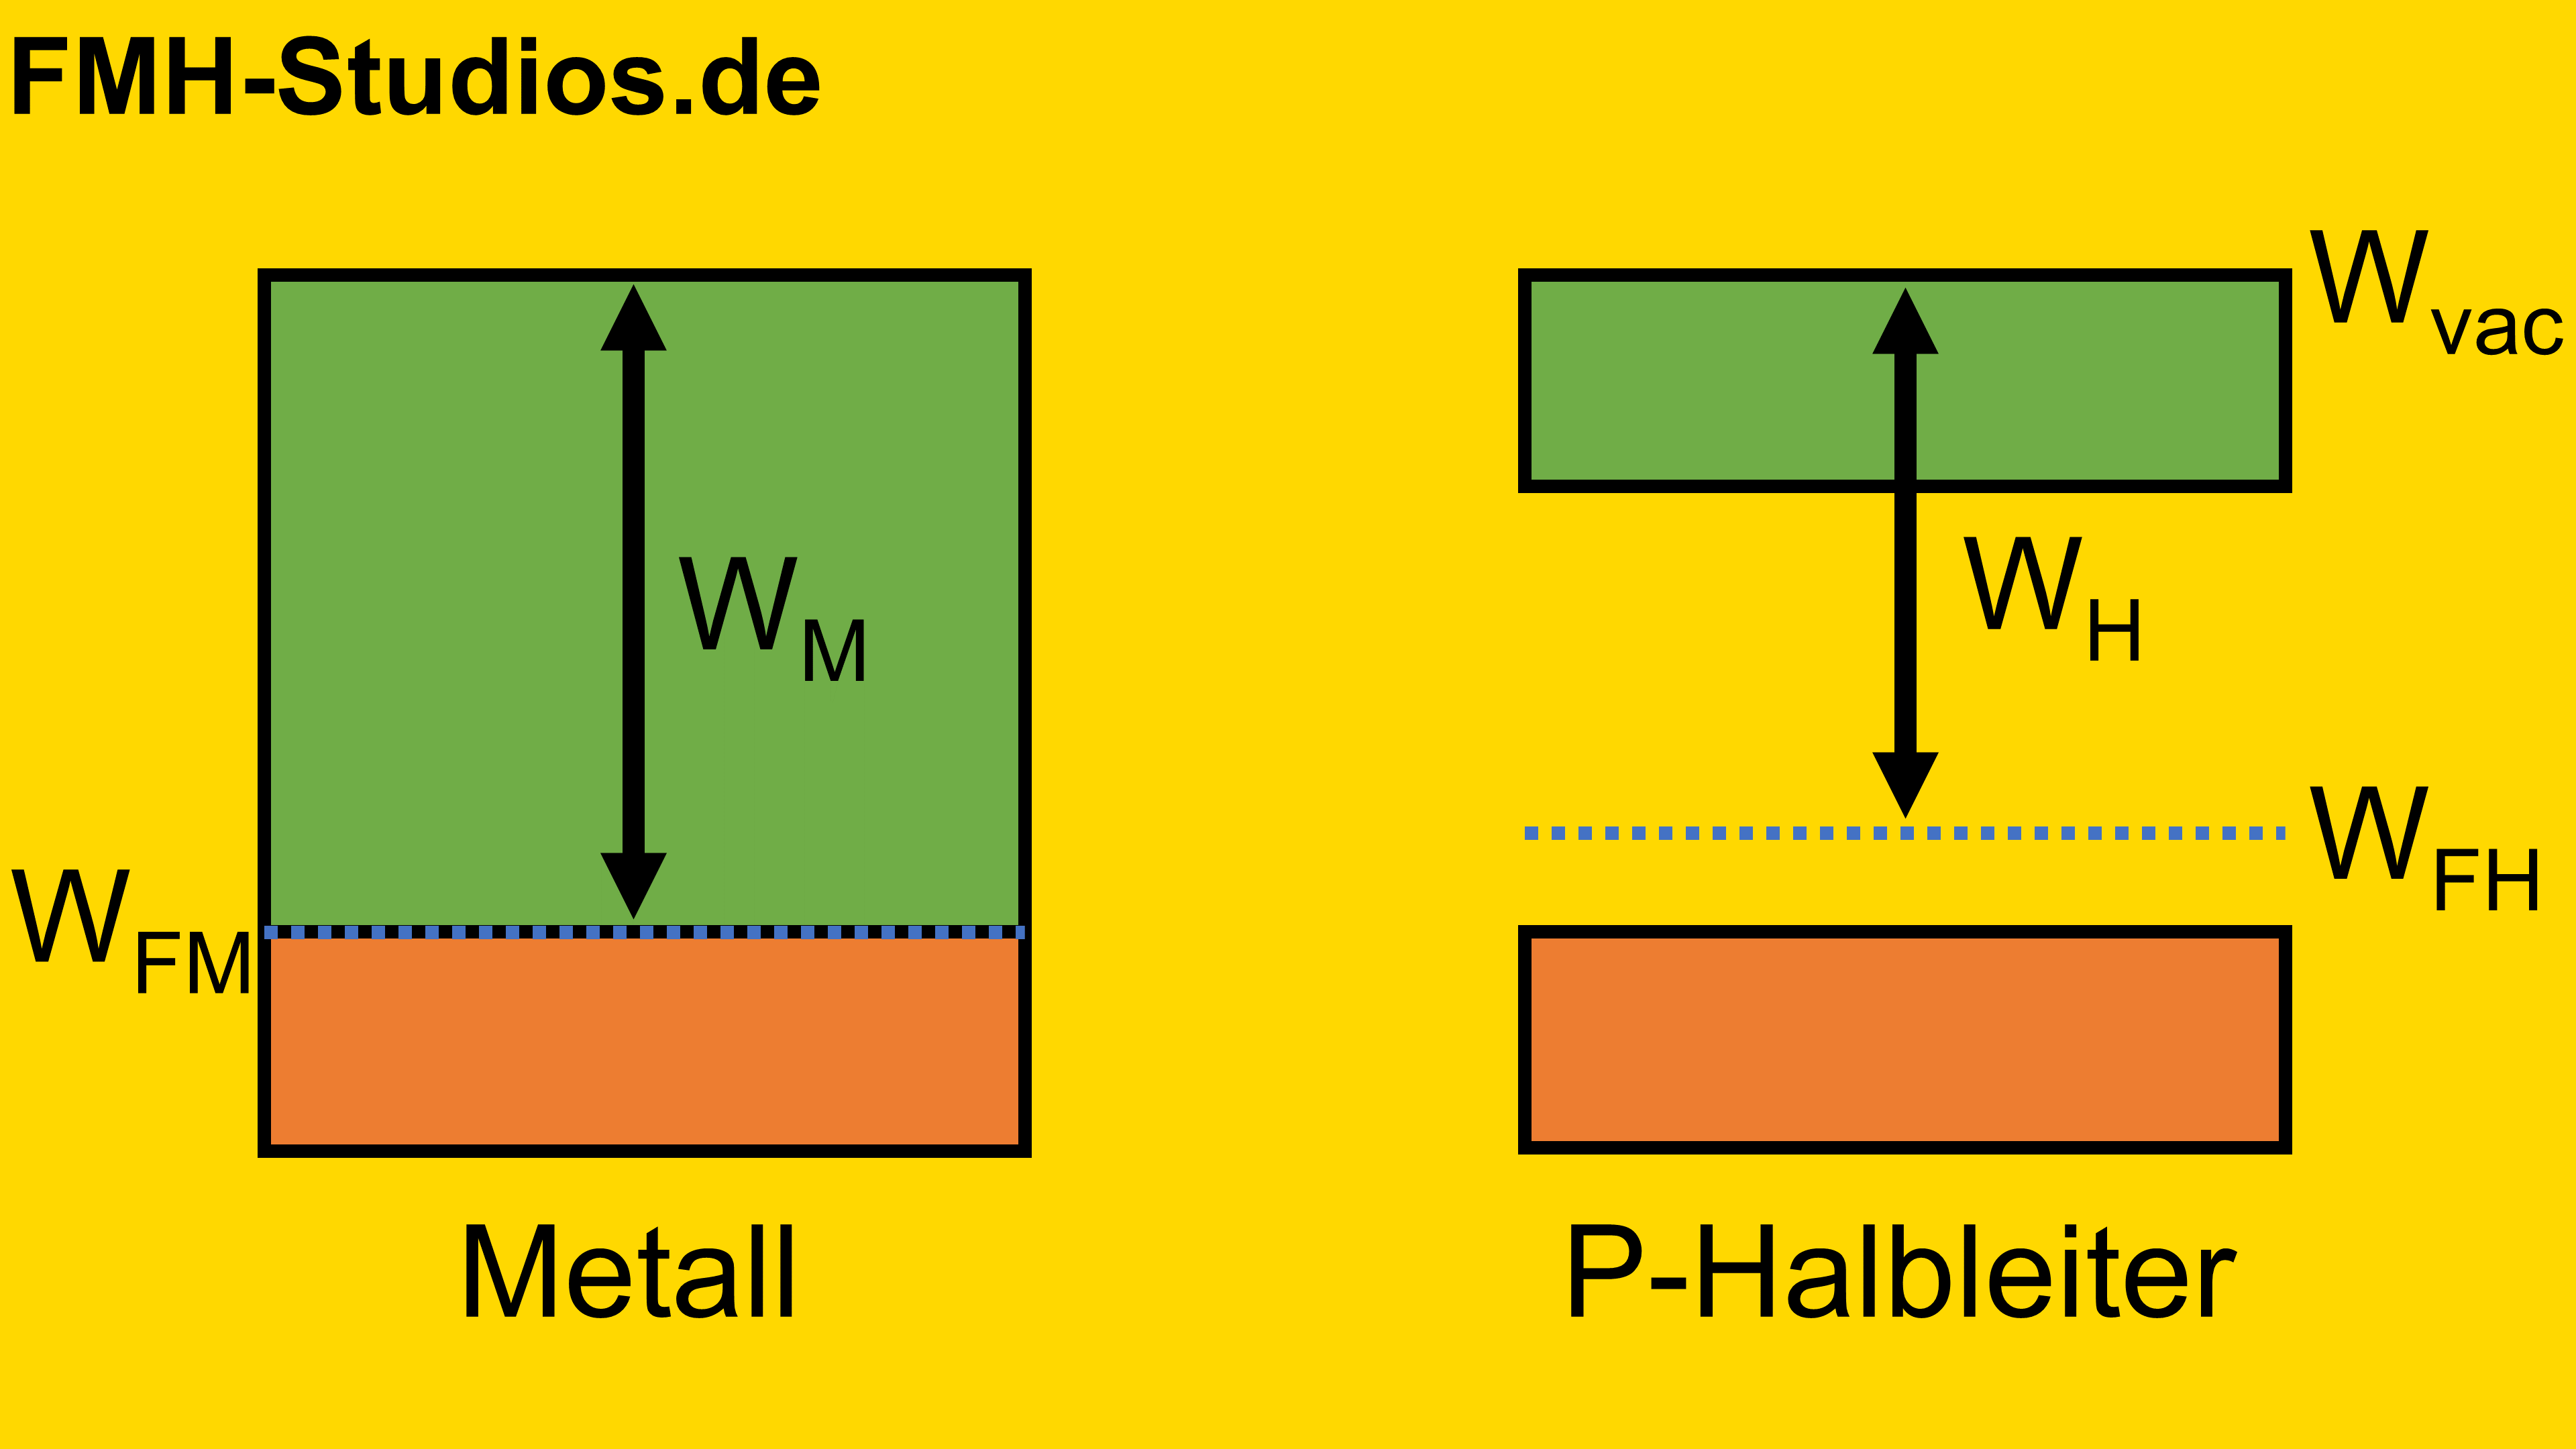 Diode - PN-Übergang - Halbleiter - Bändermodell – P-dotierter – Metall – Übergang – Metall-Halbleiter-Übergang - Ohmscher-Kontakt